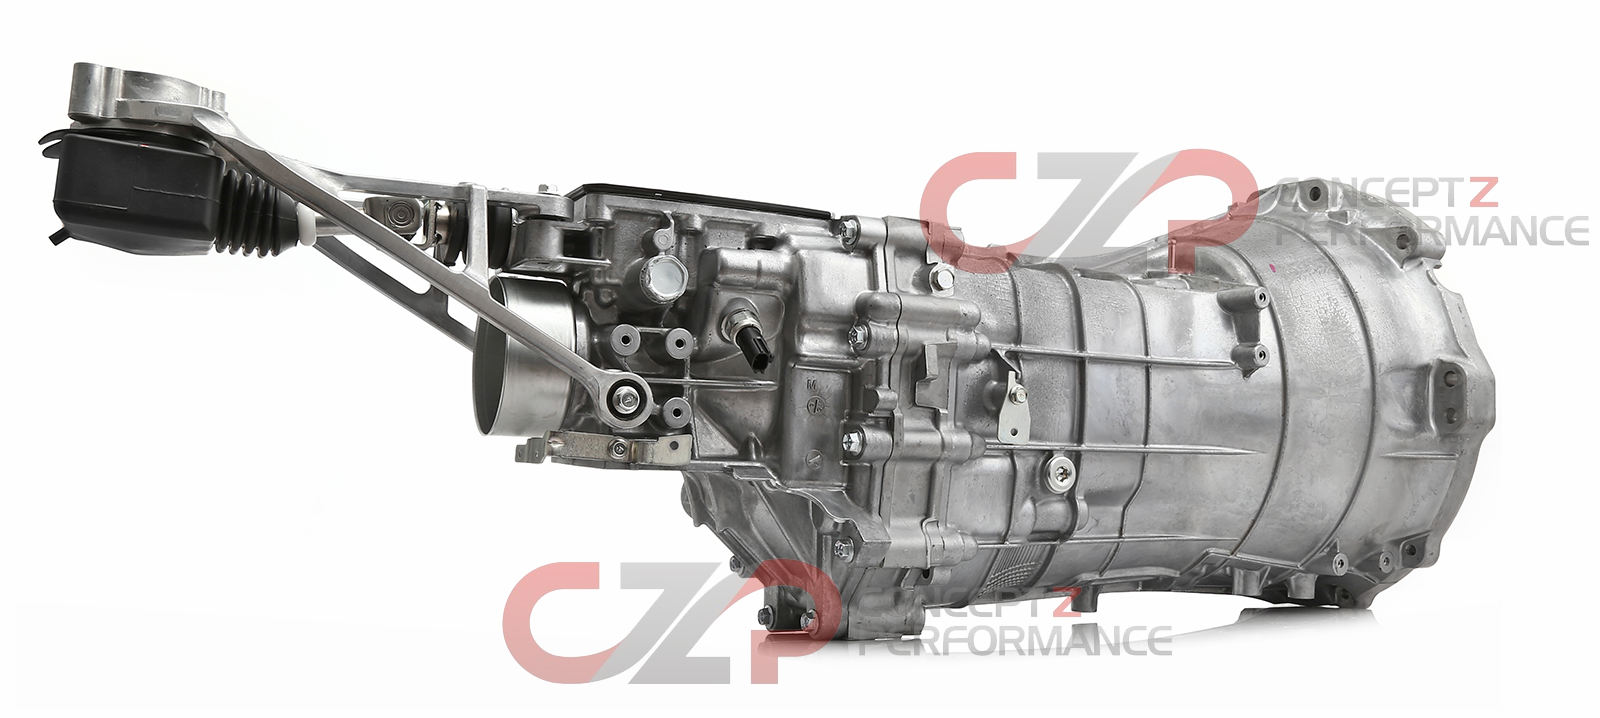 Nissan OEM  Manual Transmission Assembly w/o SynchroRev Match - Nissan 370Z Z34